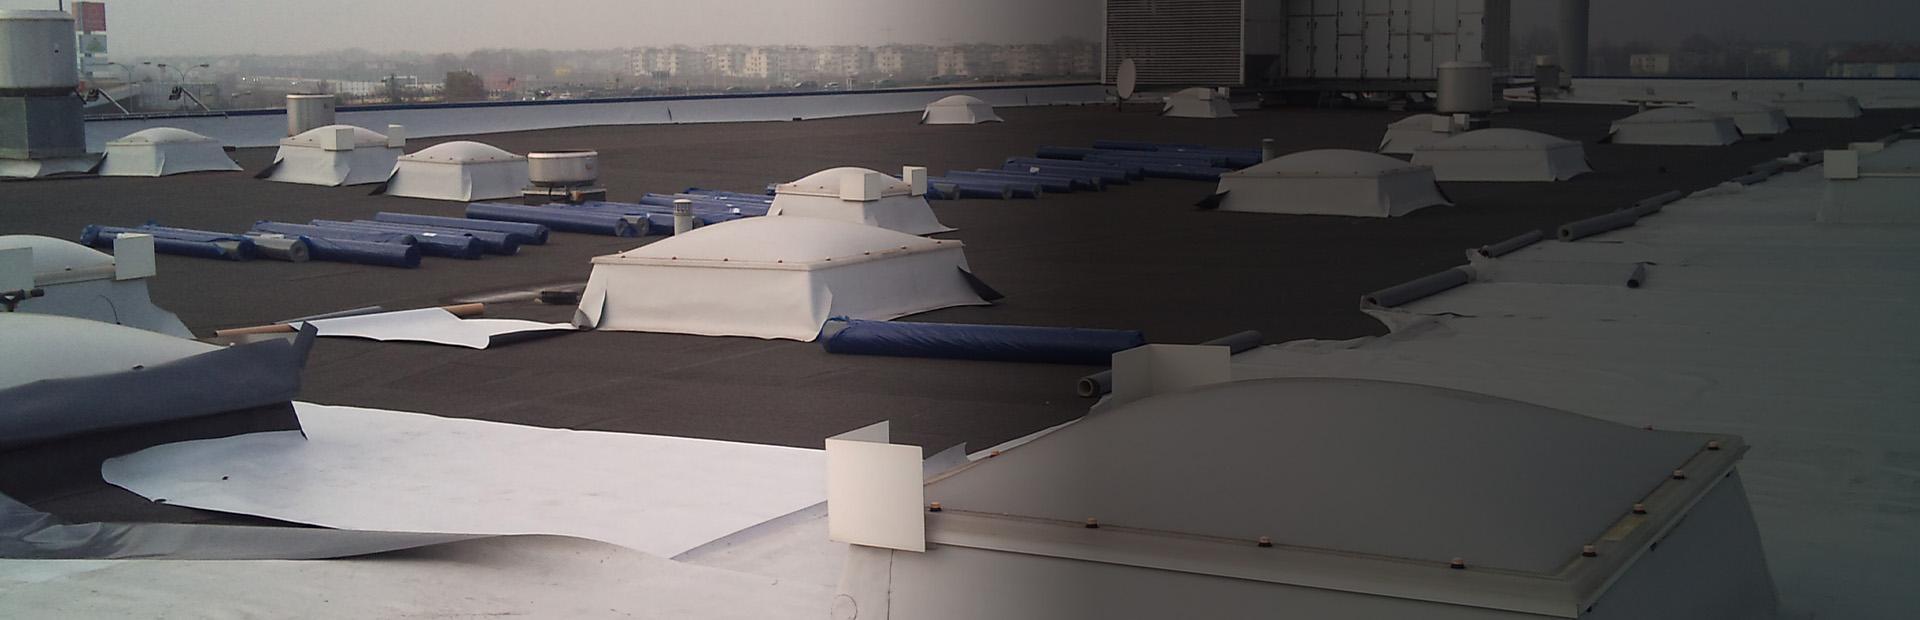 Slajd 3 - izolacja dachu budynku